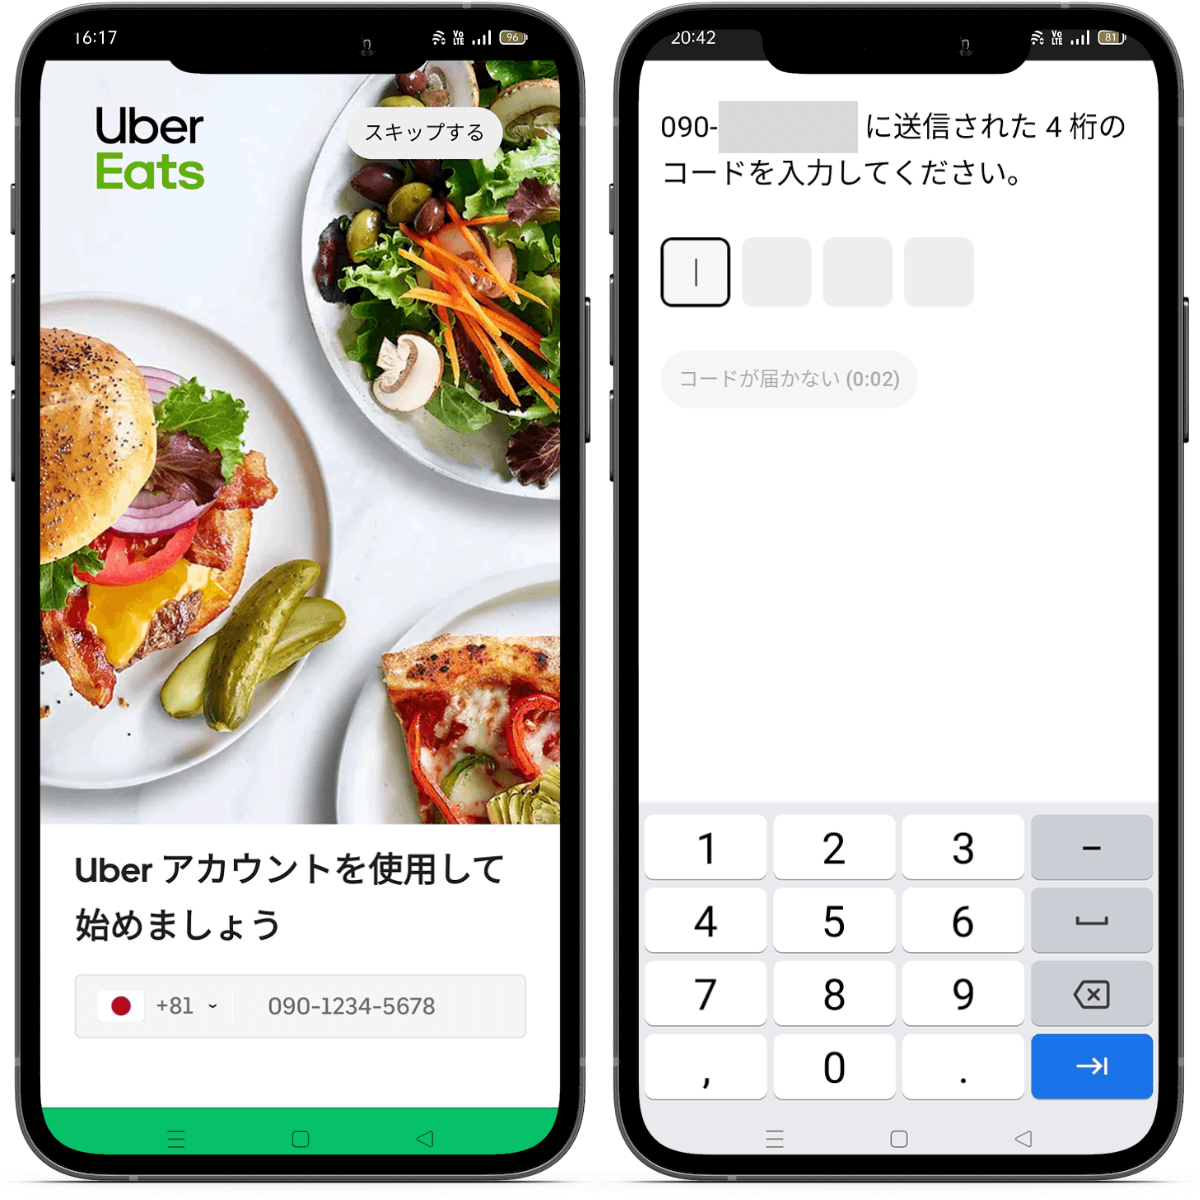 Uber Eats(ウーバーイーツ)のアカウント作成の流れ③Uber Eatsアプリをダウンロードする